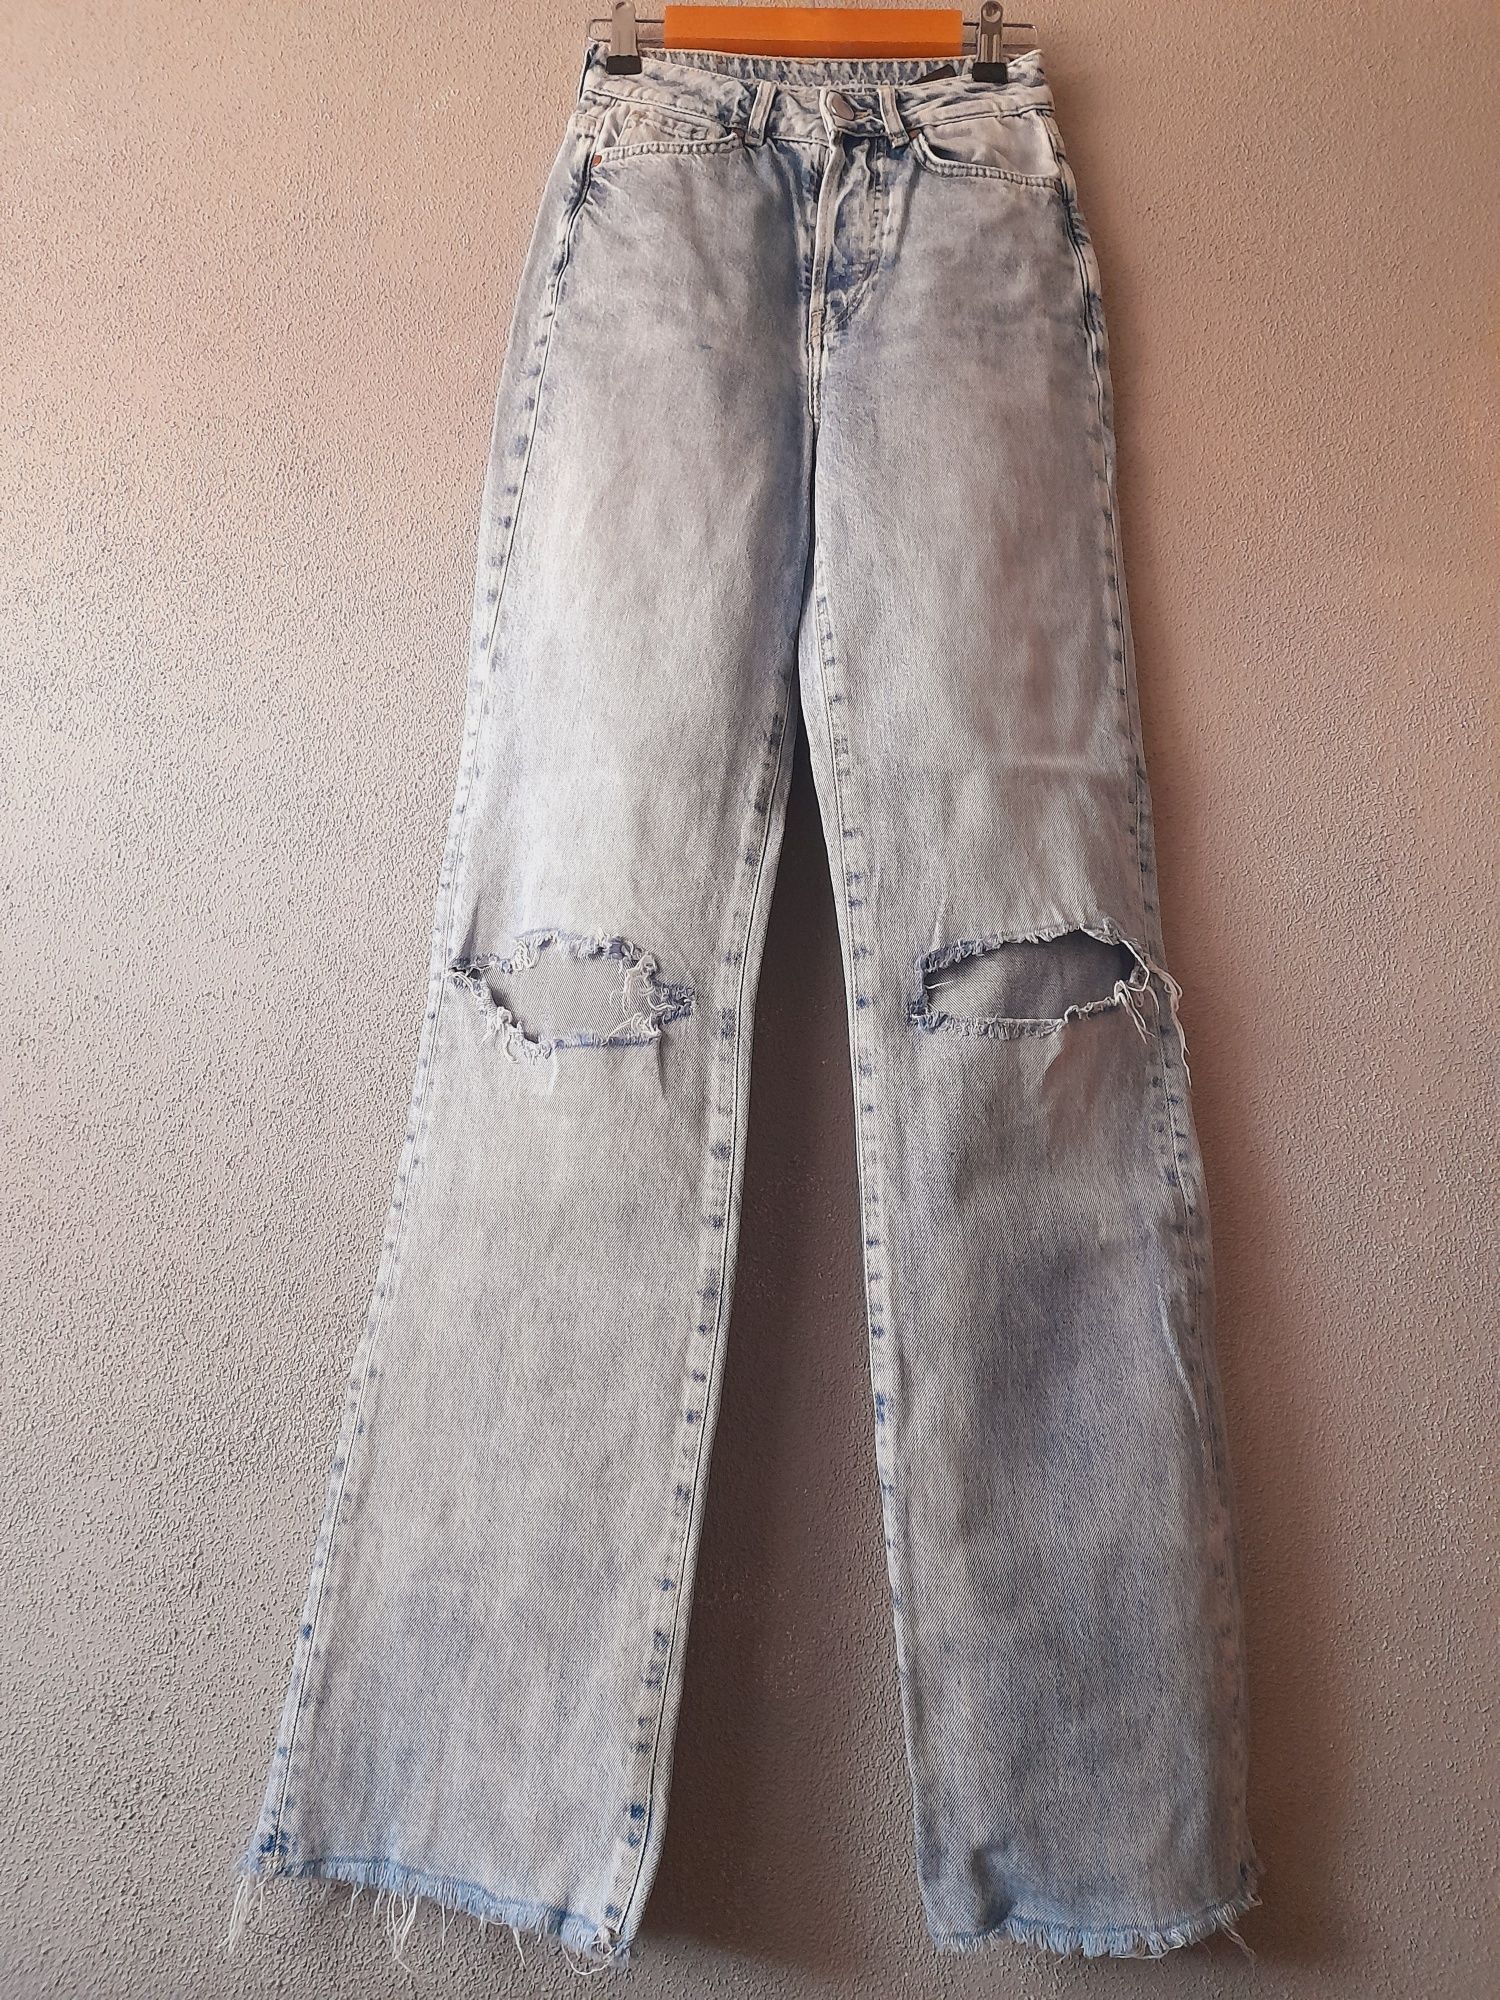 Dżinsy dżins jeans jeansowe 34-36 XS S